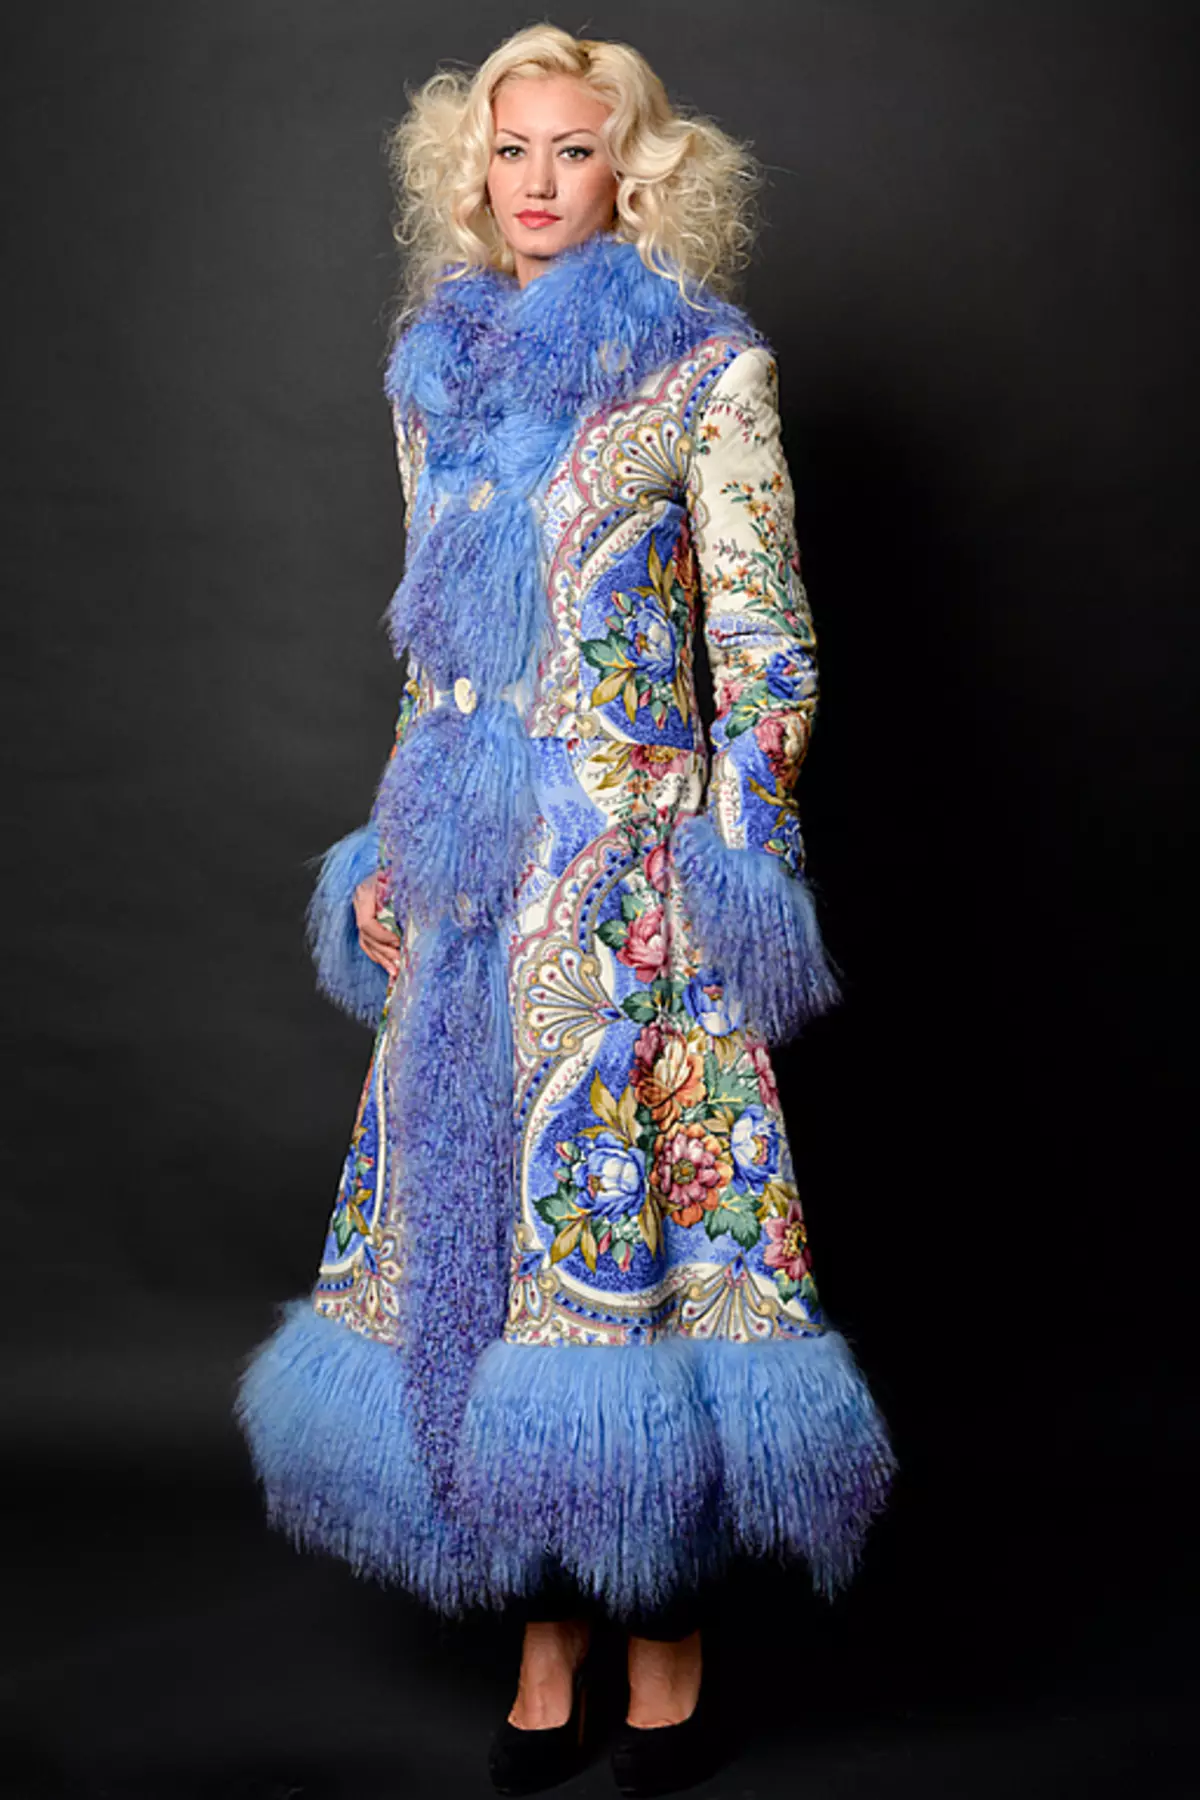 Mantel von Pavloposad-Muschaten (29 Fotos): Binden Sie ein pavelopospalstiges Taschentuch auf einen Mantel 484_4